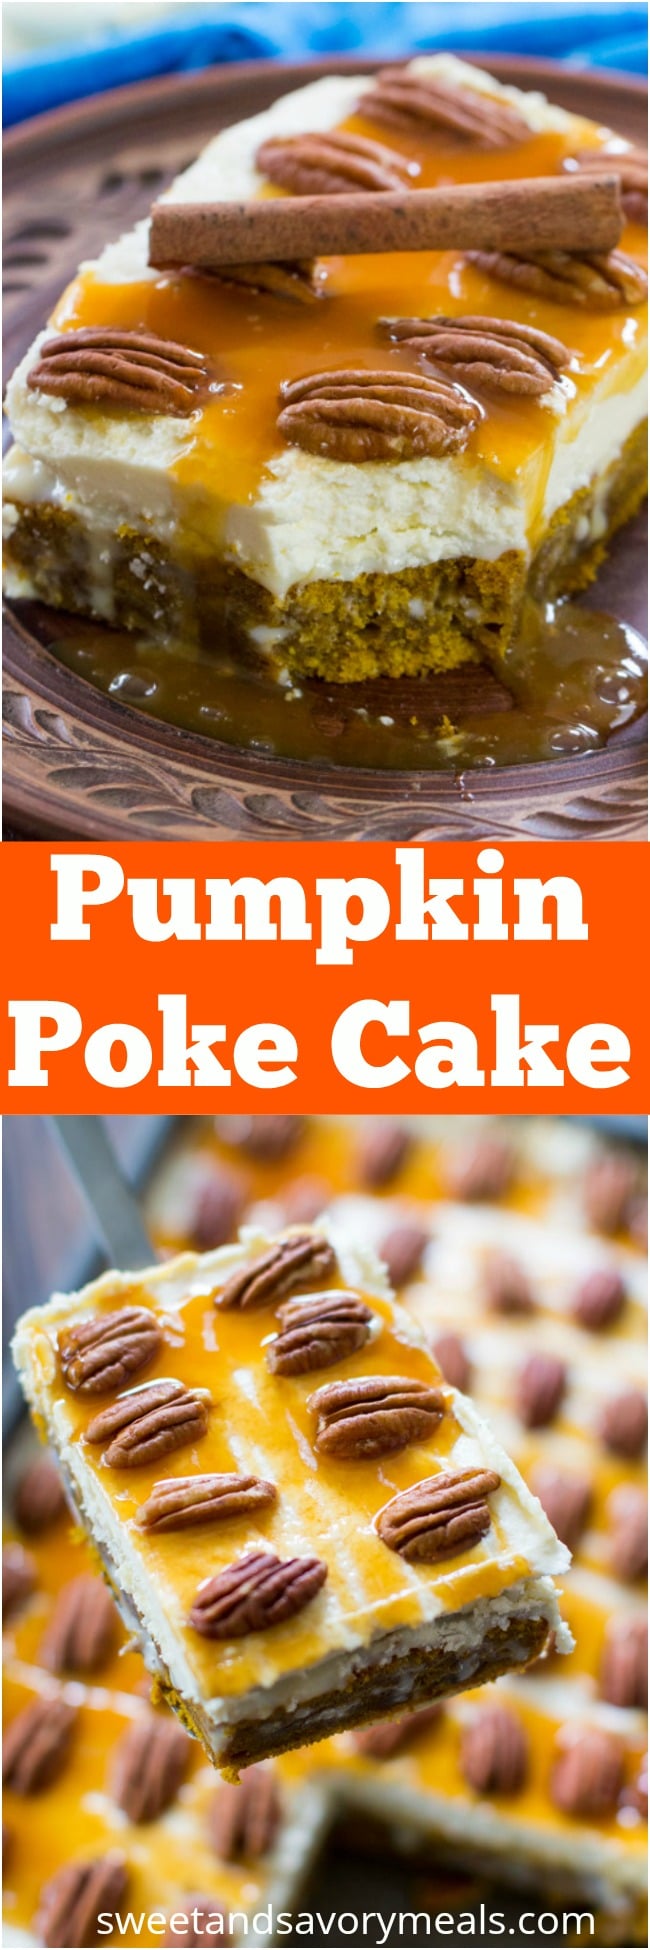 Pumpkin Poke Cake - Sweet and Savory Meals